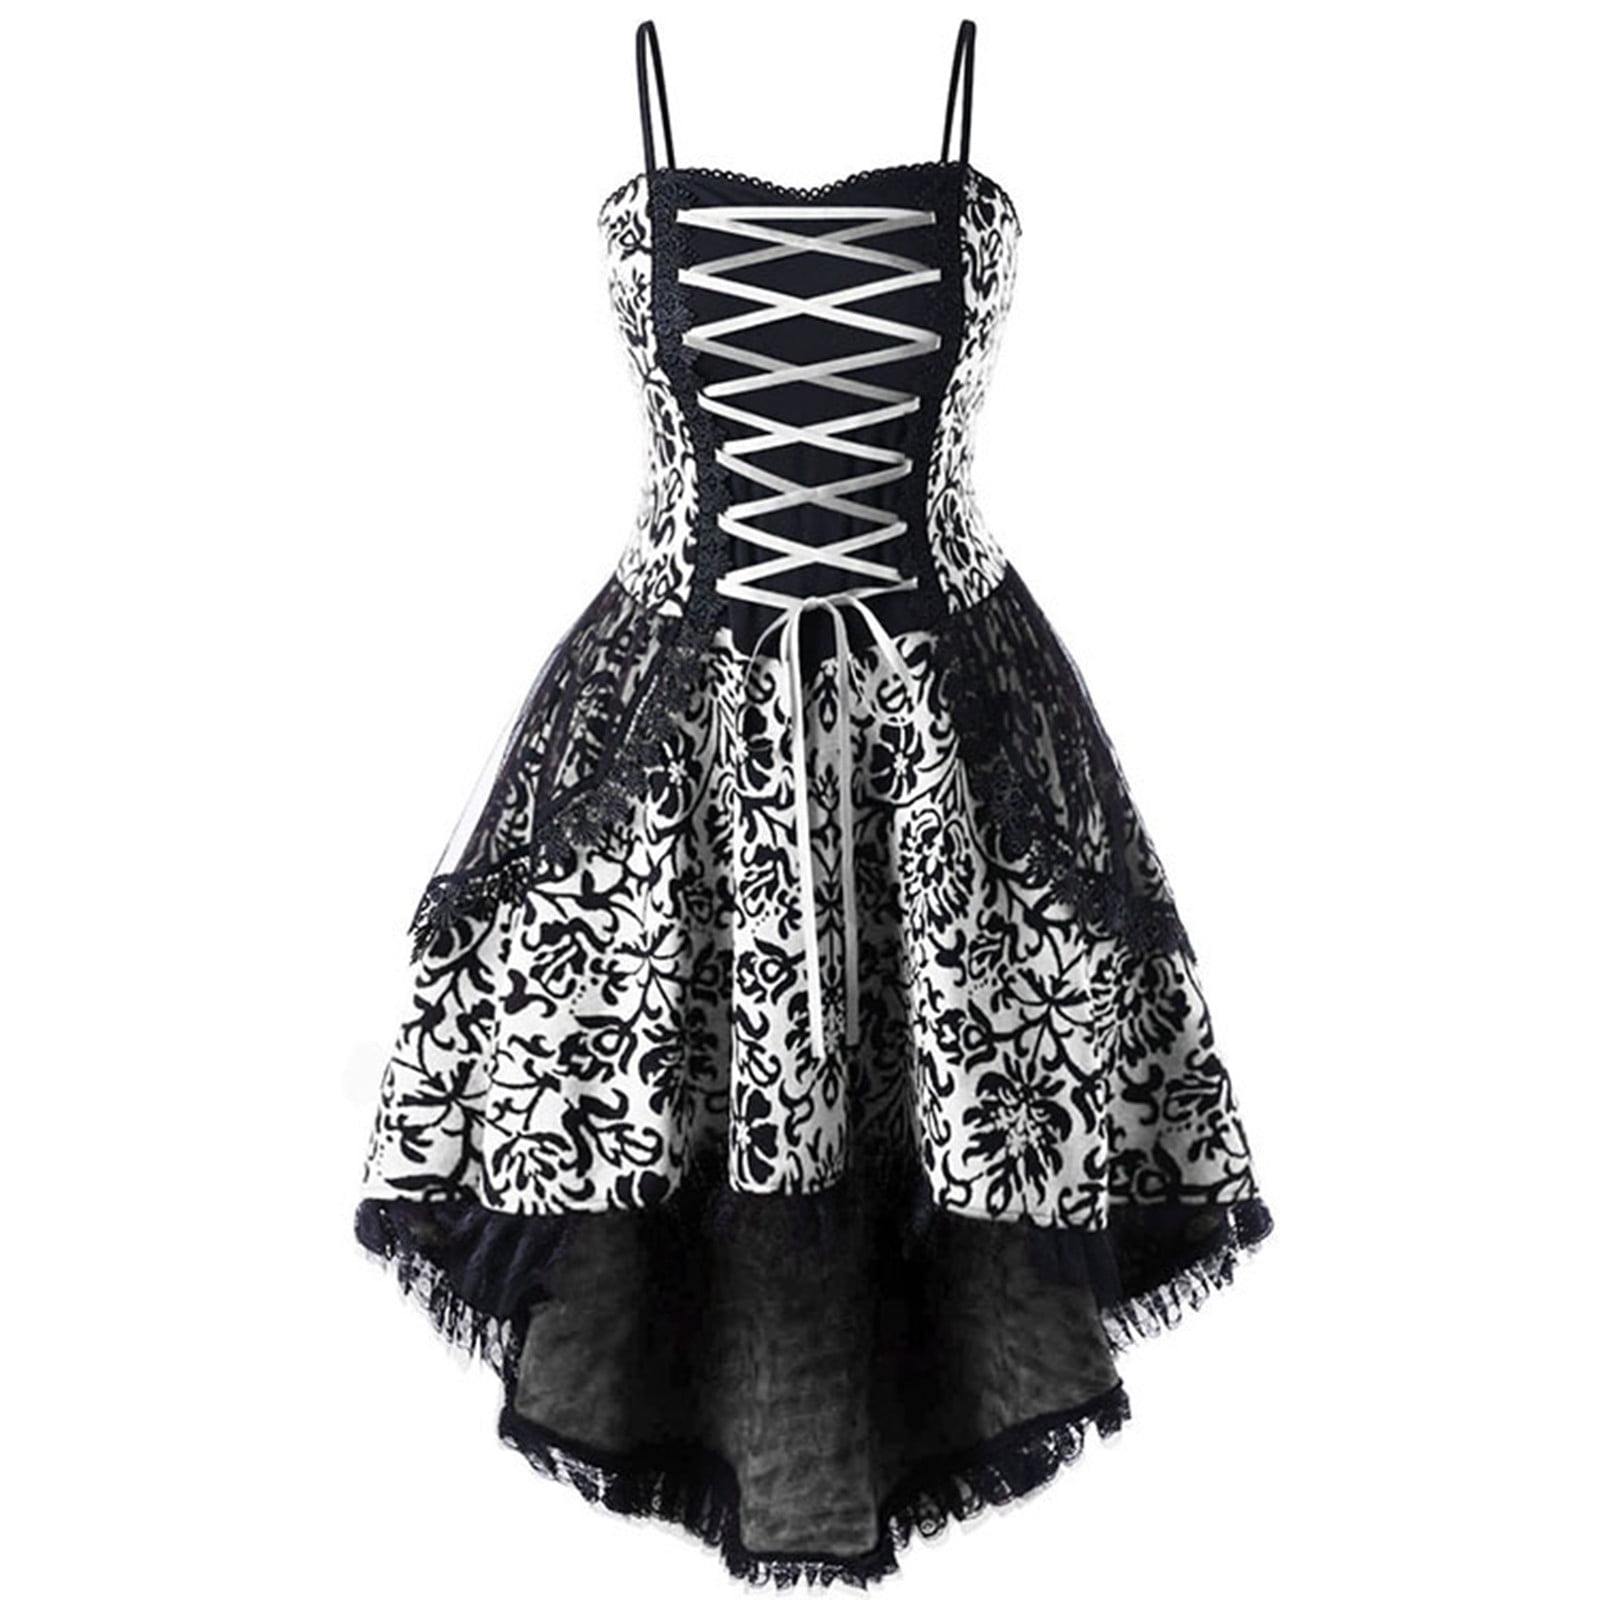 Black Lace Gothic Dress Witchy Bandage Corset Dress Sleeveless Goth  Clothing